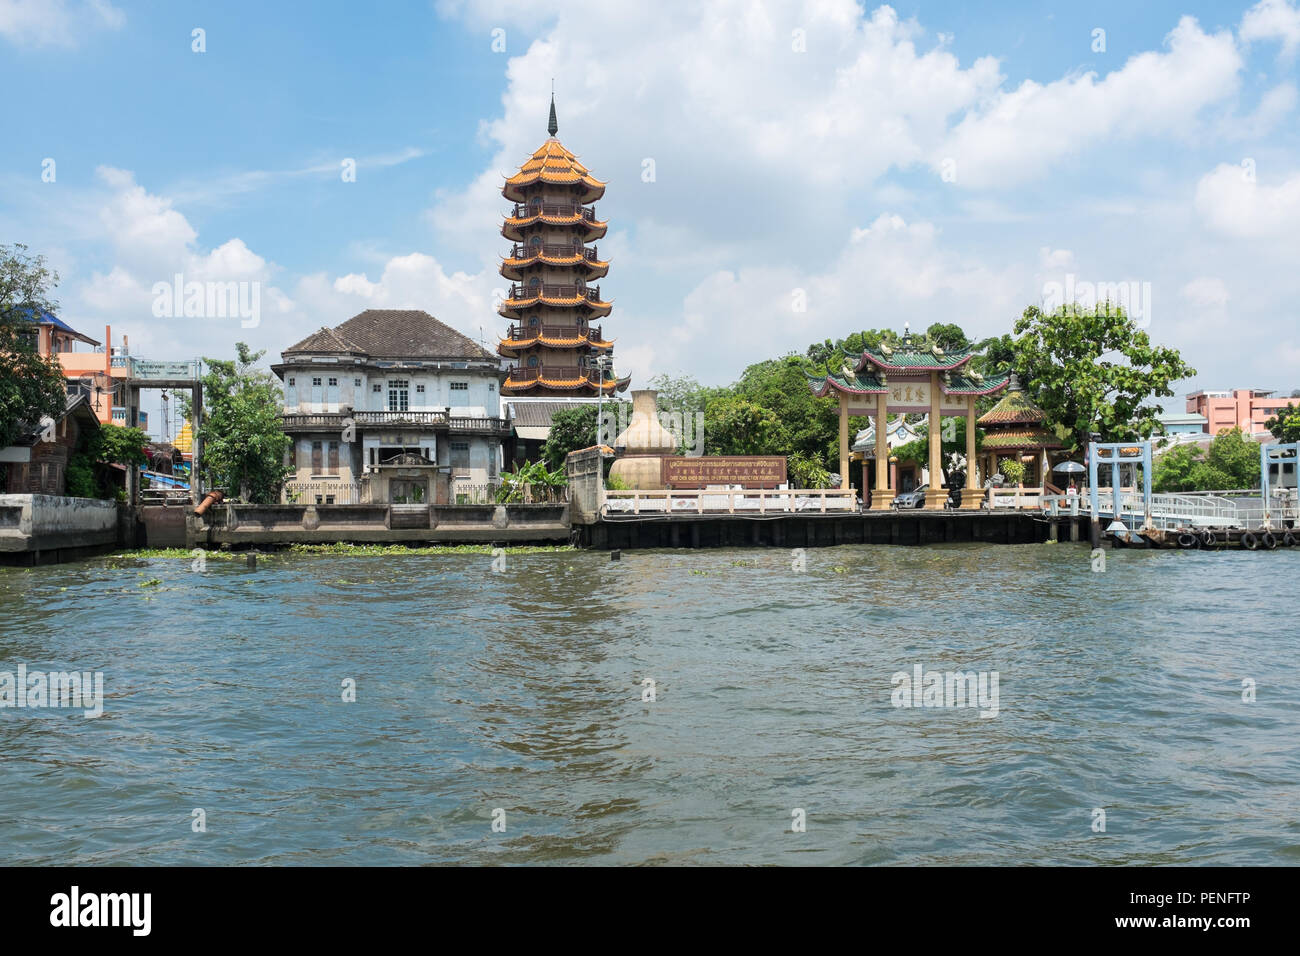 Chinesischen taoistischen Tempel des Chee Chin Khor moralische up-lifting für Benefiction Stiftung am Chao Phraya Fluss in Bangkok, Thailand Stockfoto